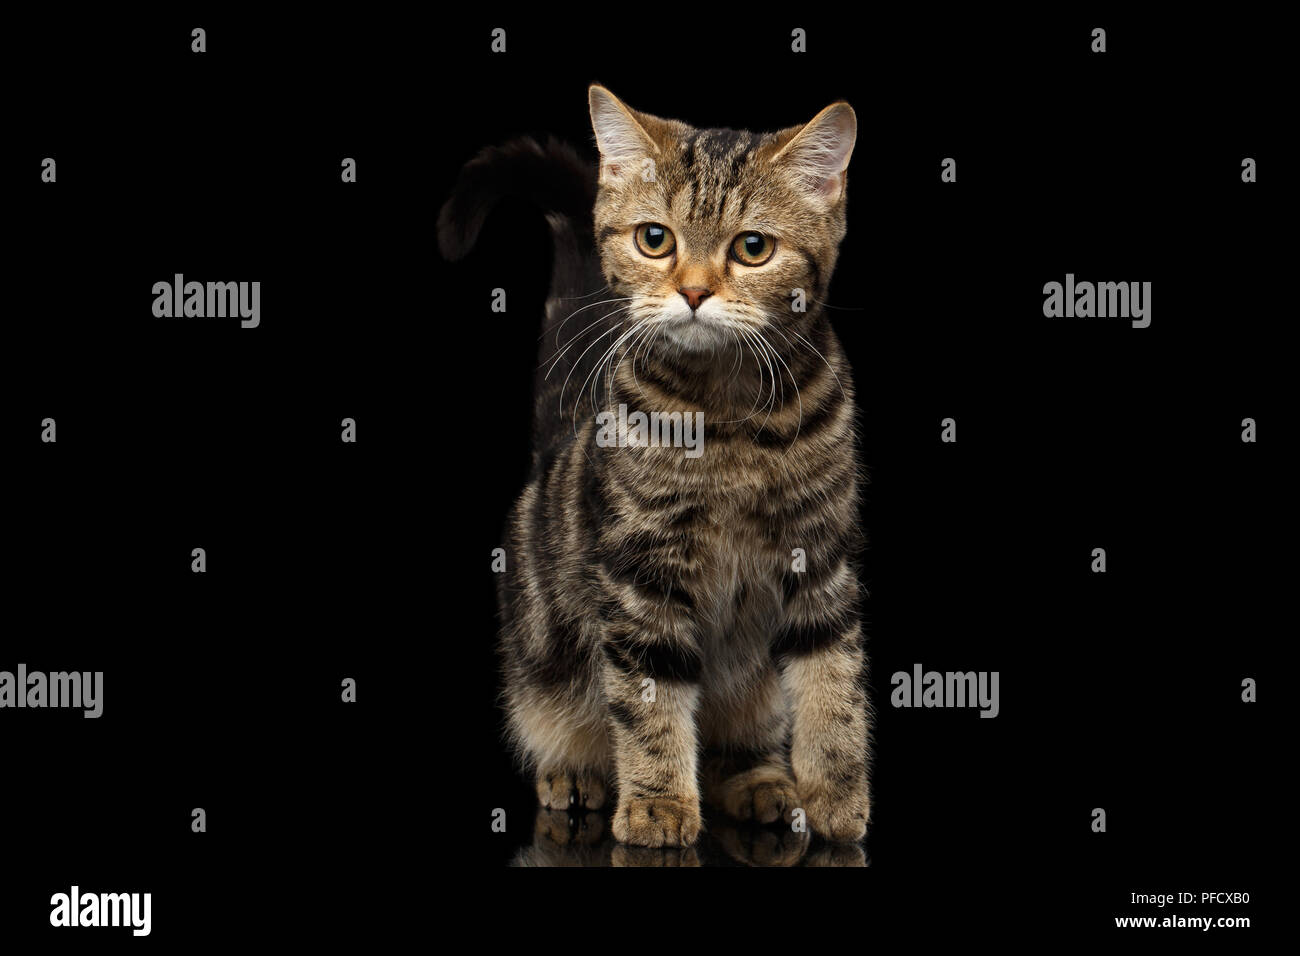 Tabby Scottish gattino, funny Coda piegata e sembra curioso isolato su sfondo nero Foto Stock